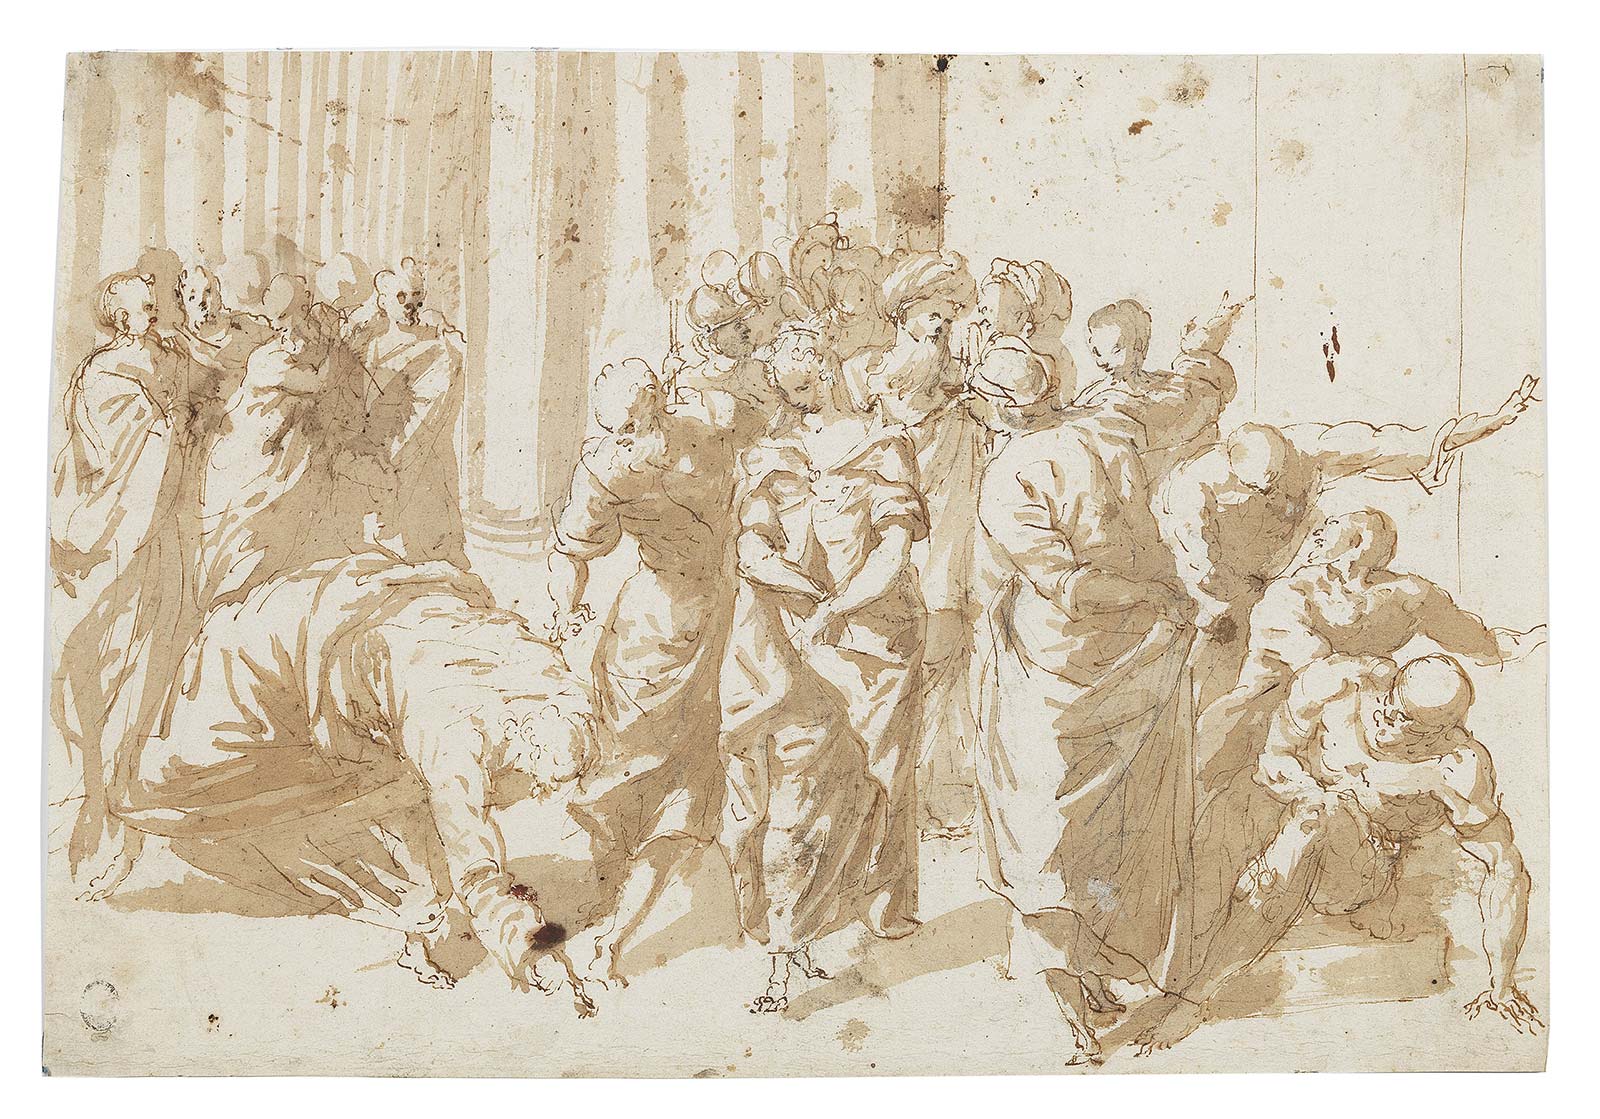 Publikation Platon, Johannes und El Grecos selbstlogifizierendes Zeichnen | ARGUS Art Asset Austria